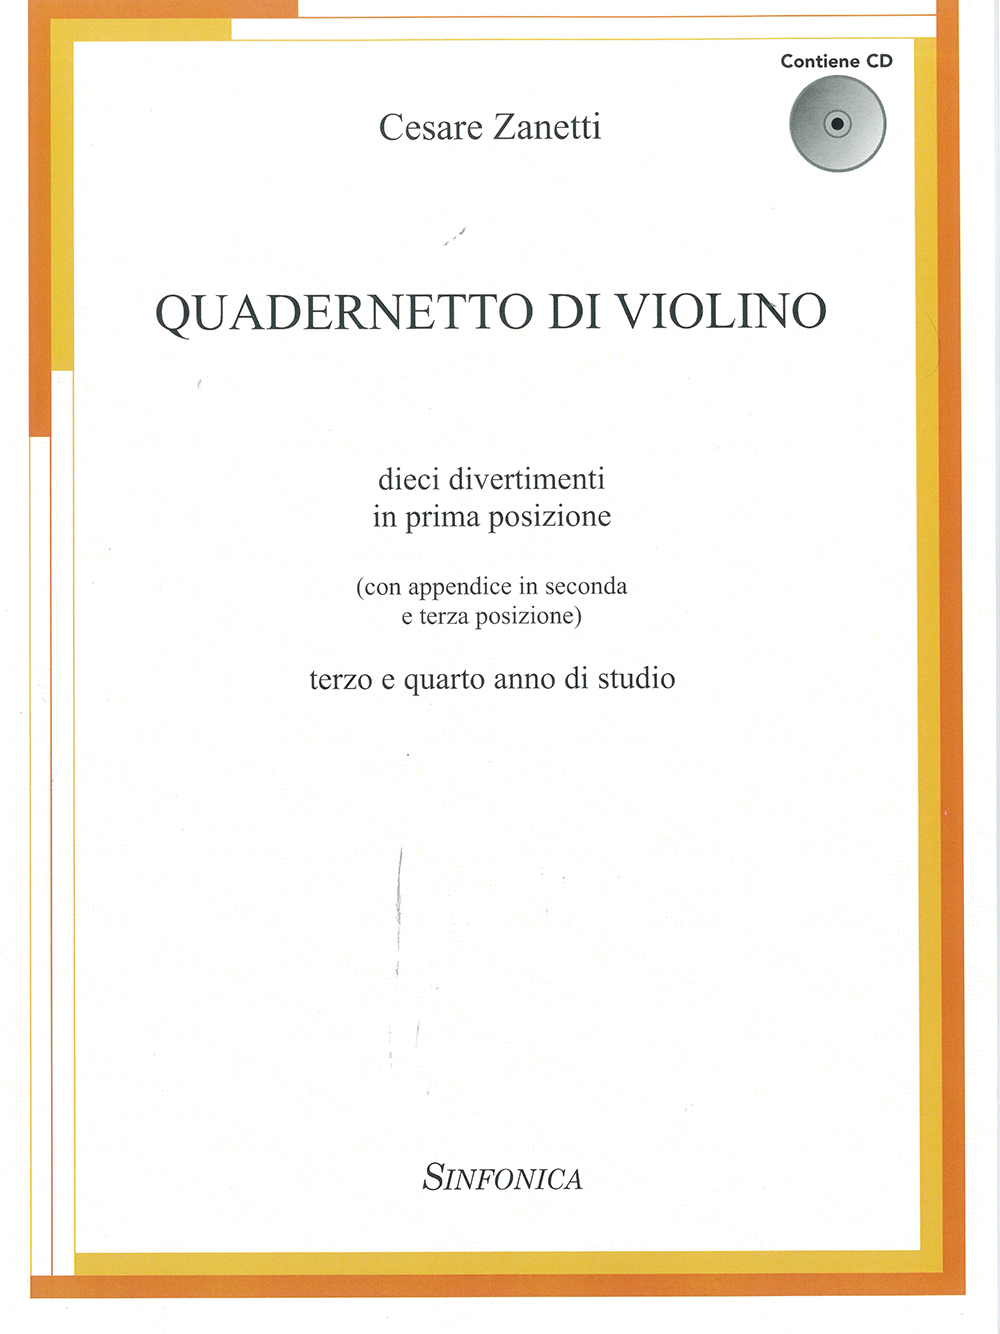 Quadernetto Di Violino (ZANETTI CESARE)